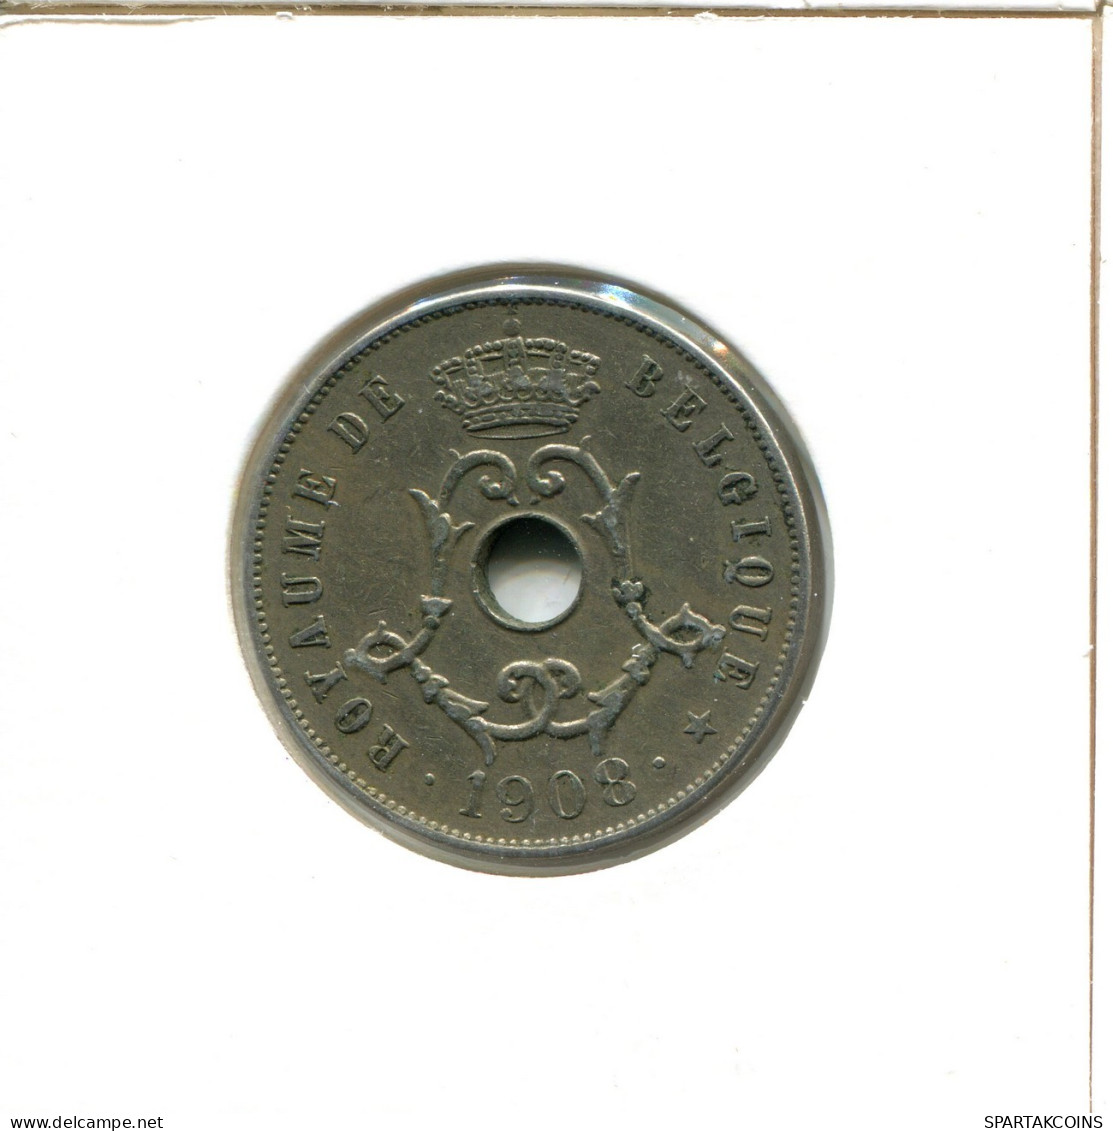 25 CENTIMES 1908 BÉLGICA BELGIUM Moneda FRENCH Text #AX403.E.A - 25 Cent